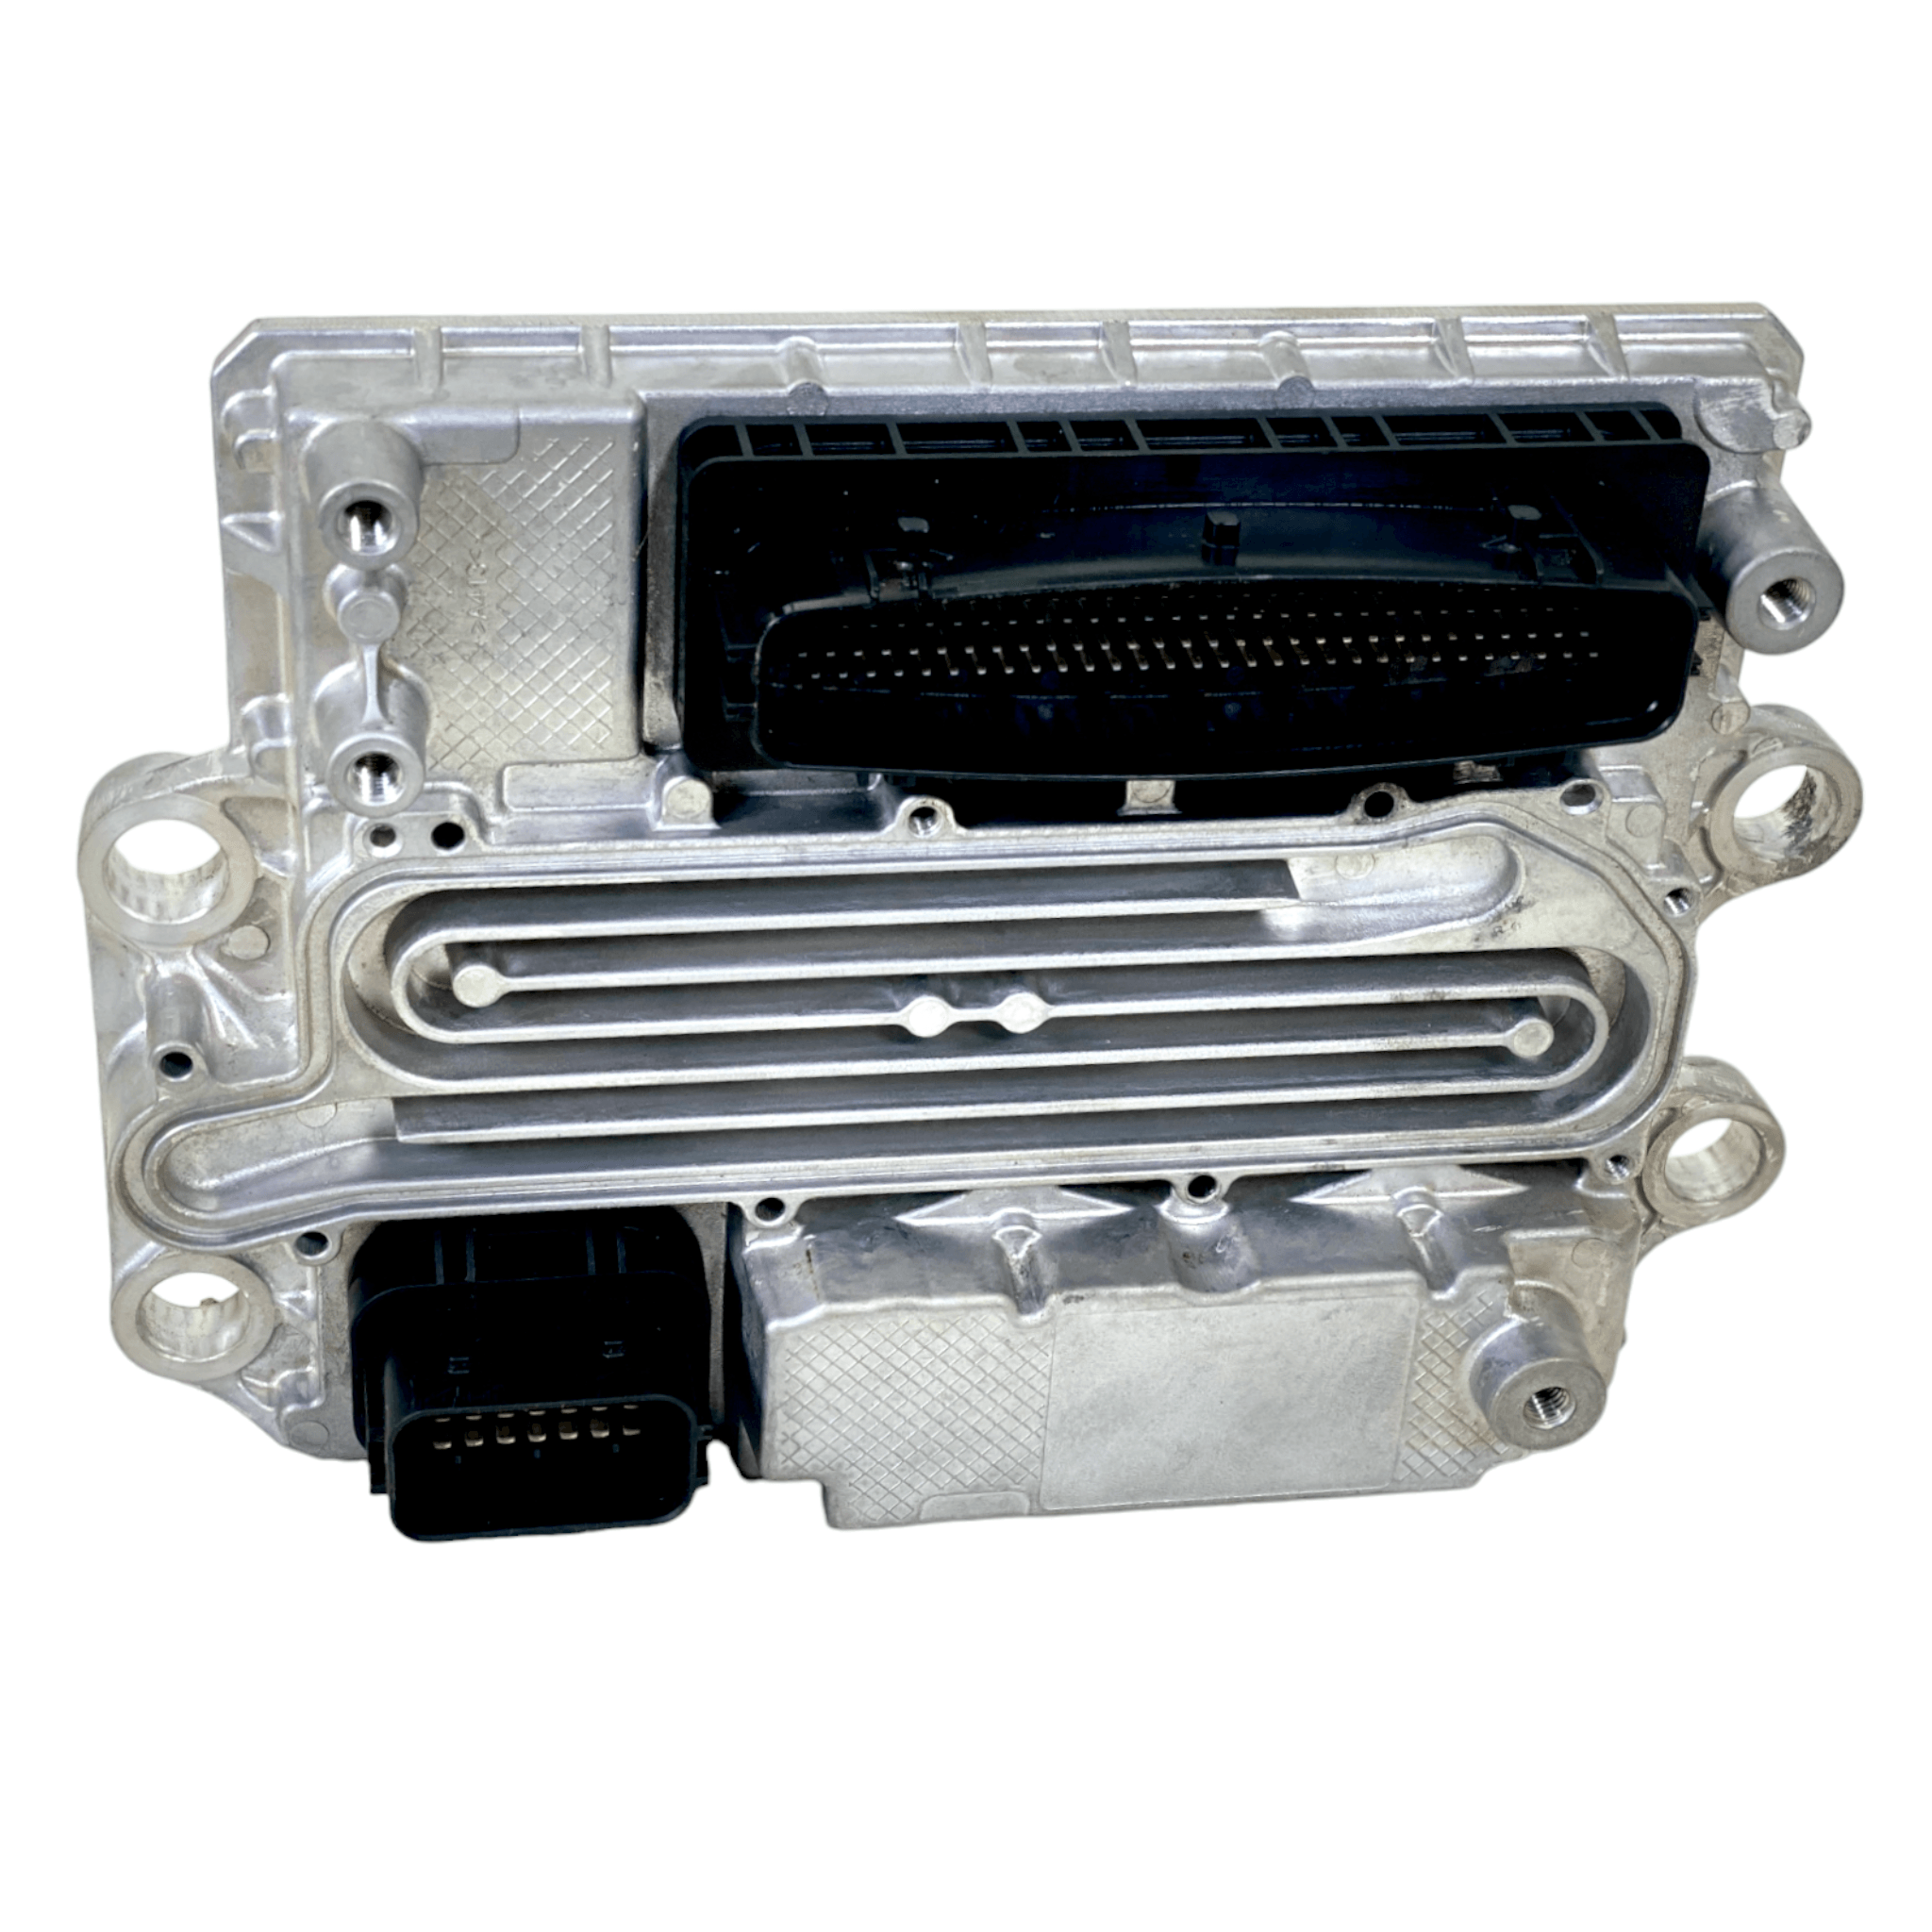 Ea0004464654 Genuine Detroit Diesel® Ecu Acm2.1 Aftertreatment Control Module Dd13 Dd15 Dd16 Ghg17 Evo - ADVANCED TRUCK PARTS